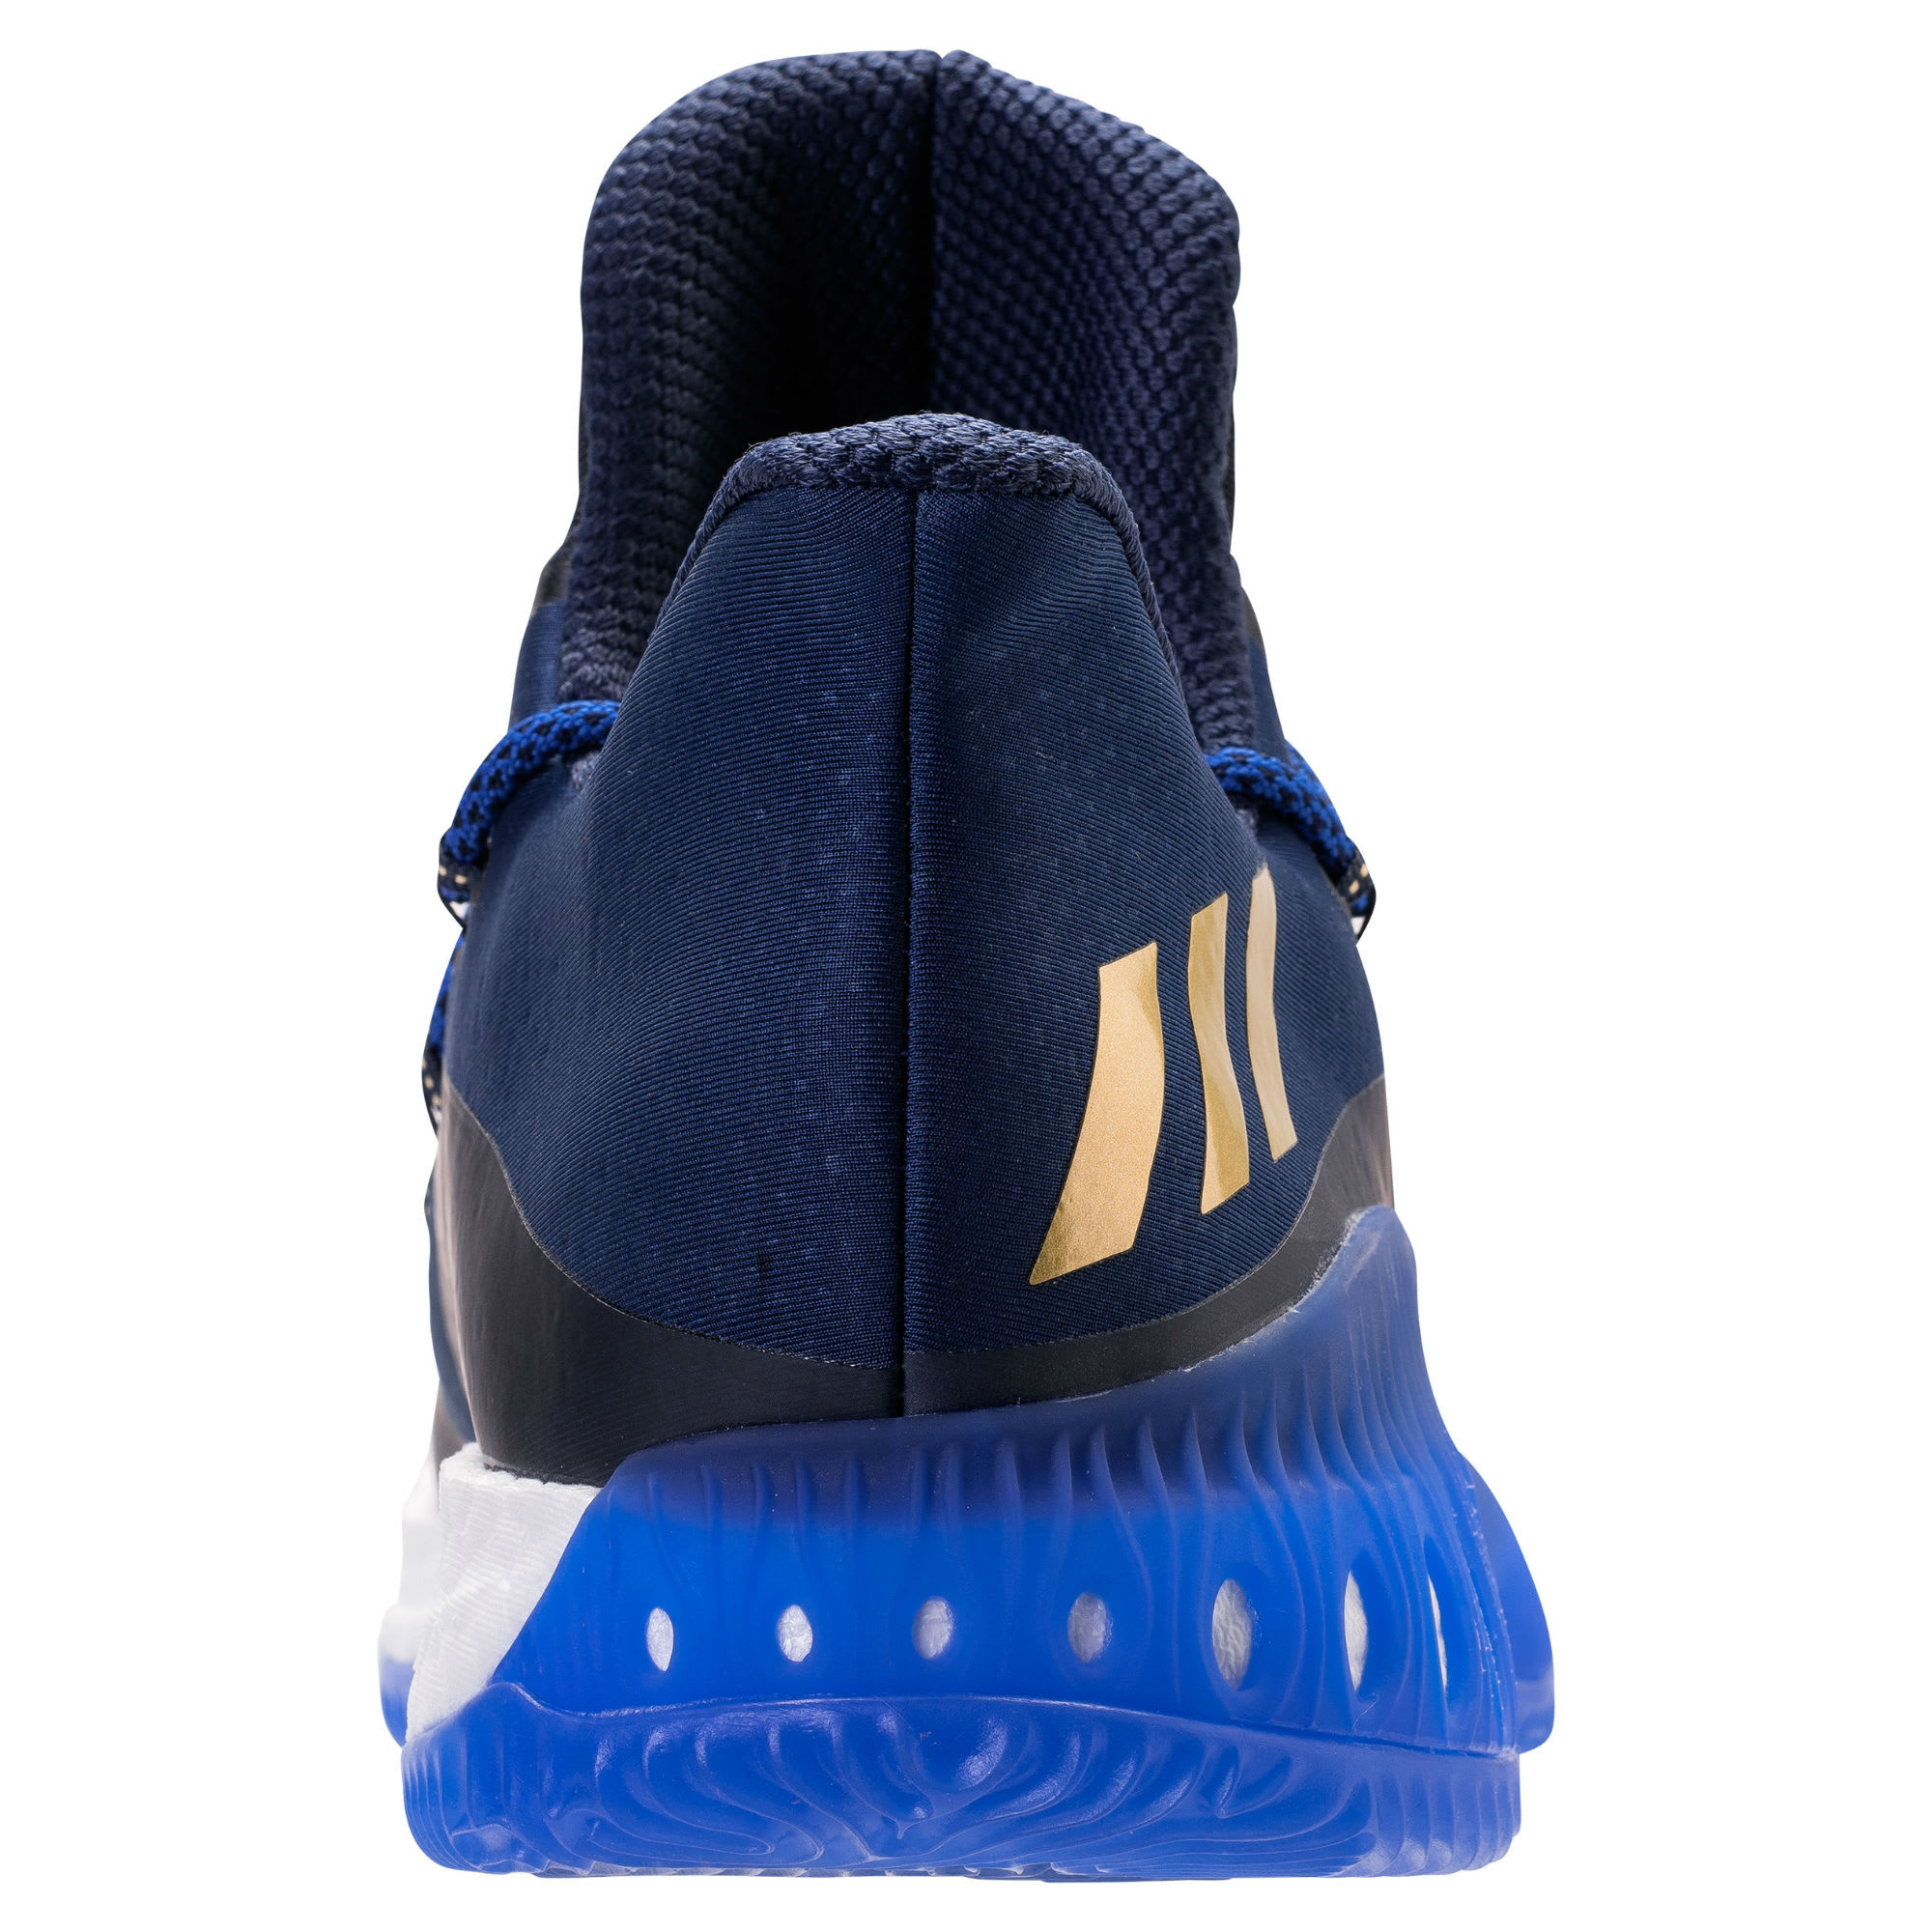 Adidas Crazy Explosive Low Andrew Wiggins PE Heel Release Date BW0571